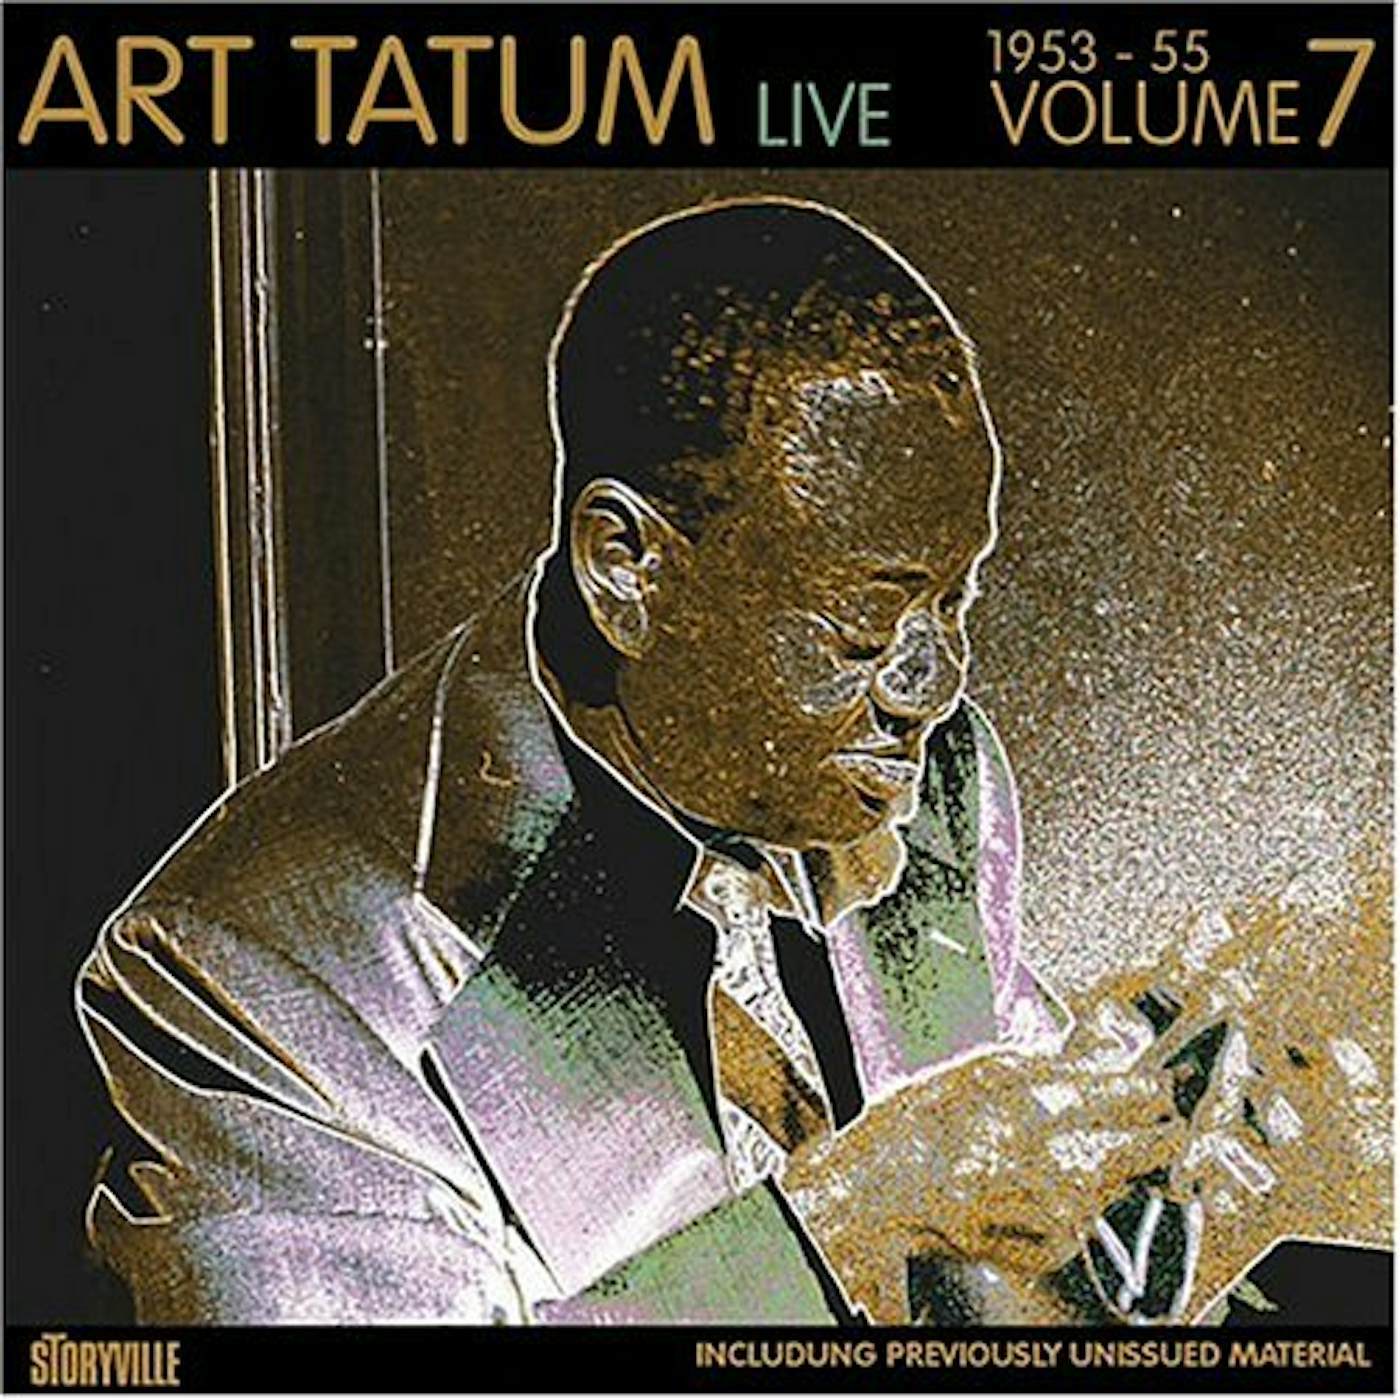 Art Tatum LIVE 1953-55 7 CD